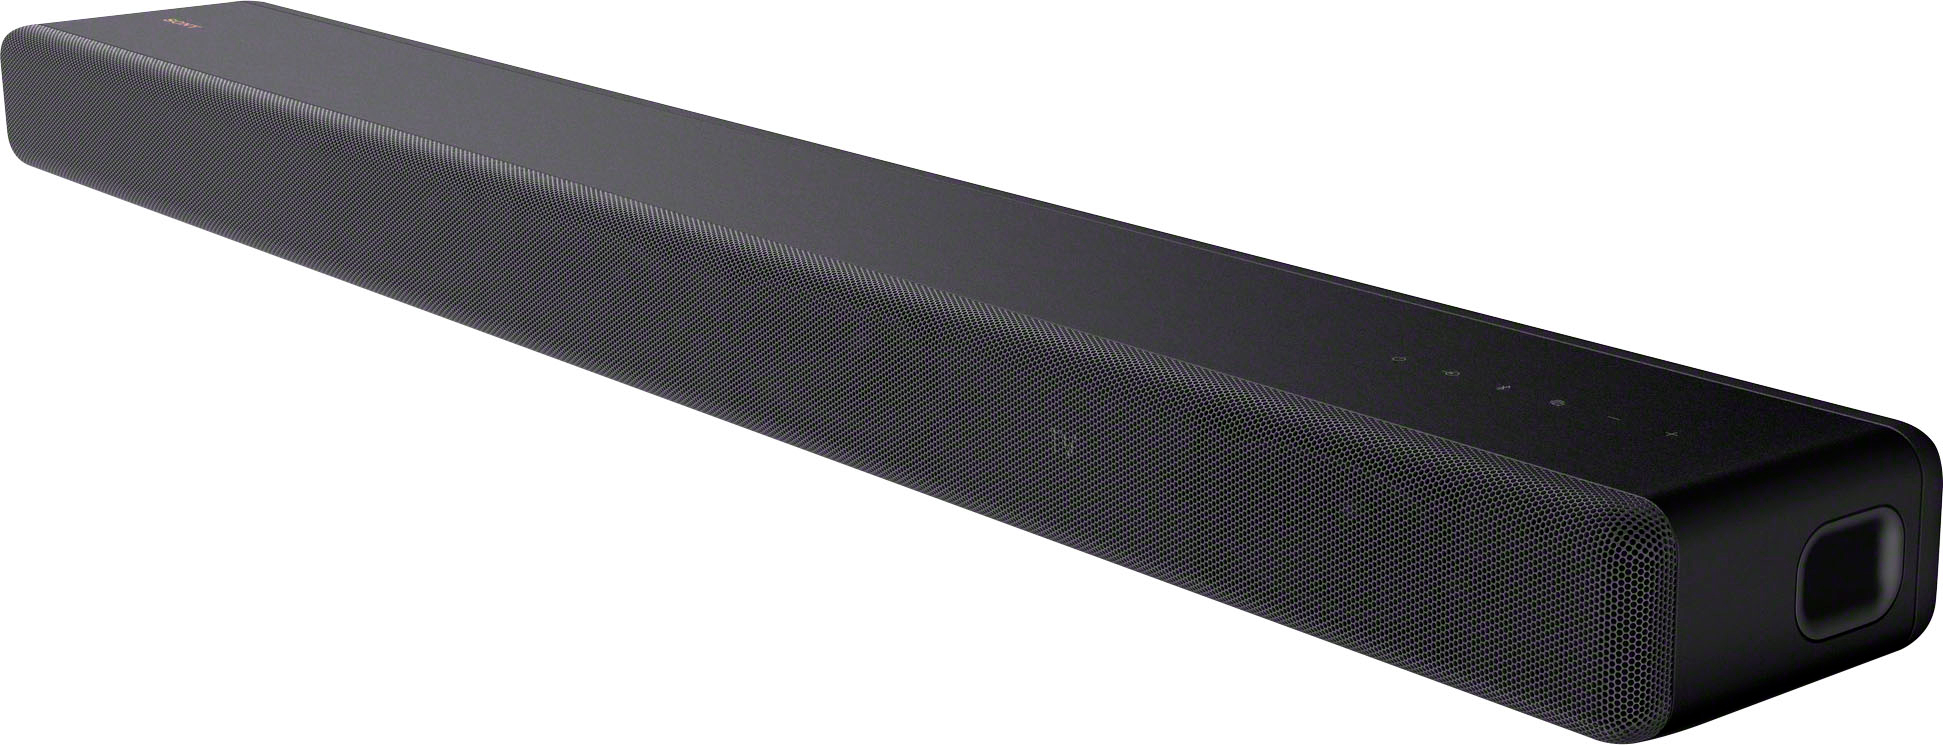 Angle View: Sony - HTA3000 3.1 ch Dolby Atmos Soundbar - Black